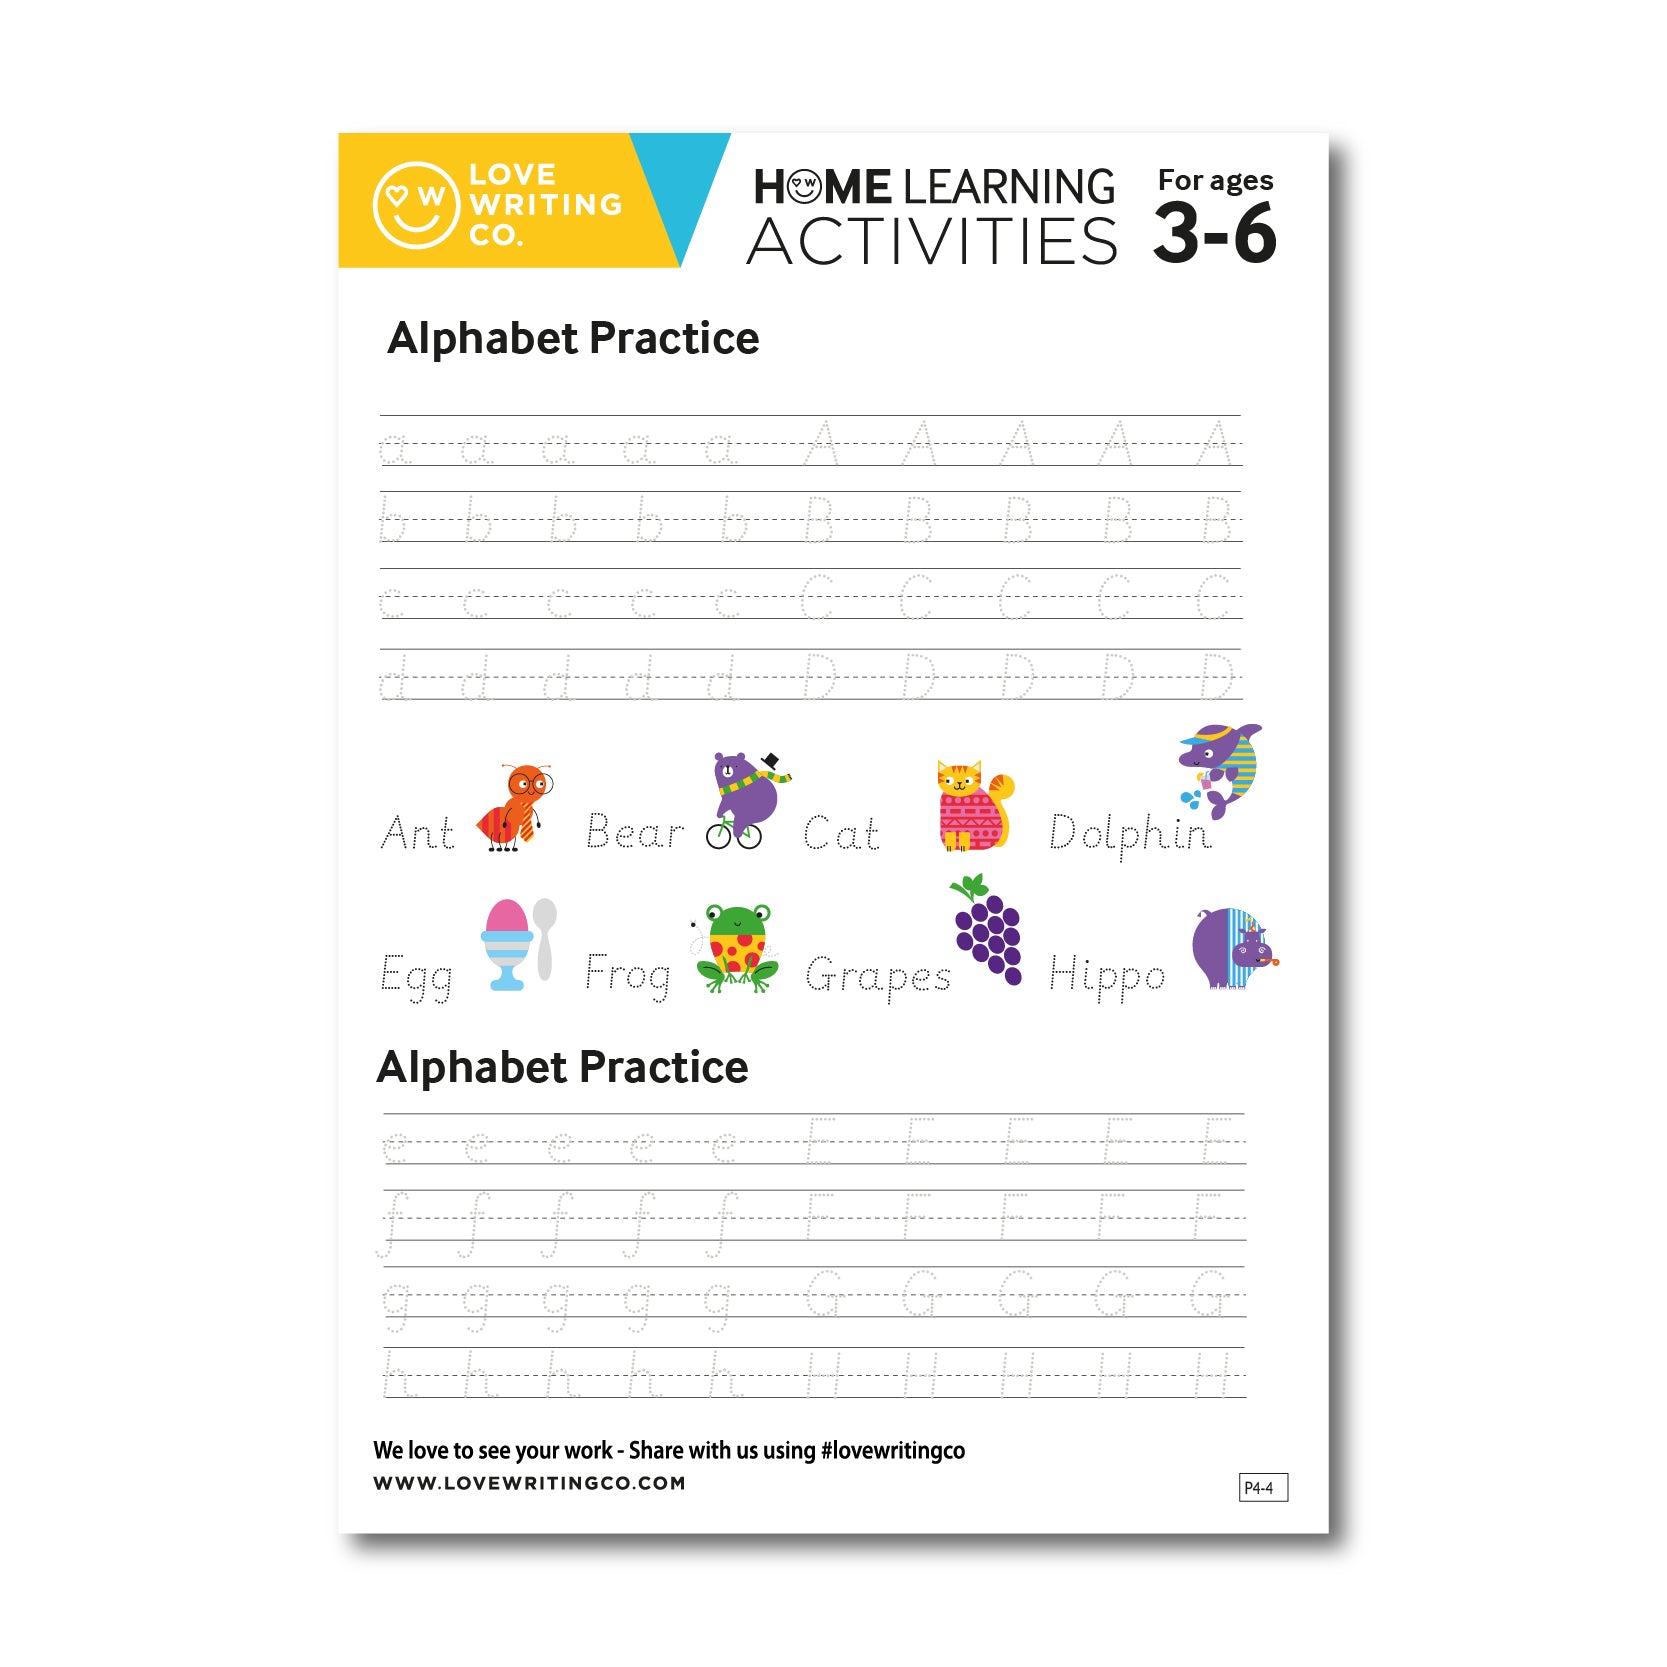 Traceable alphabet practice activities